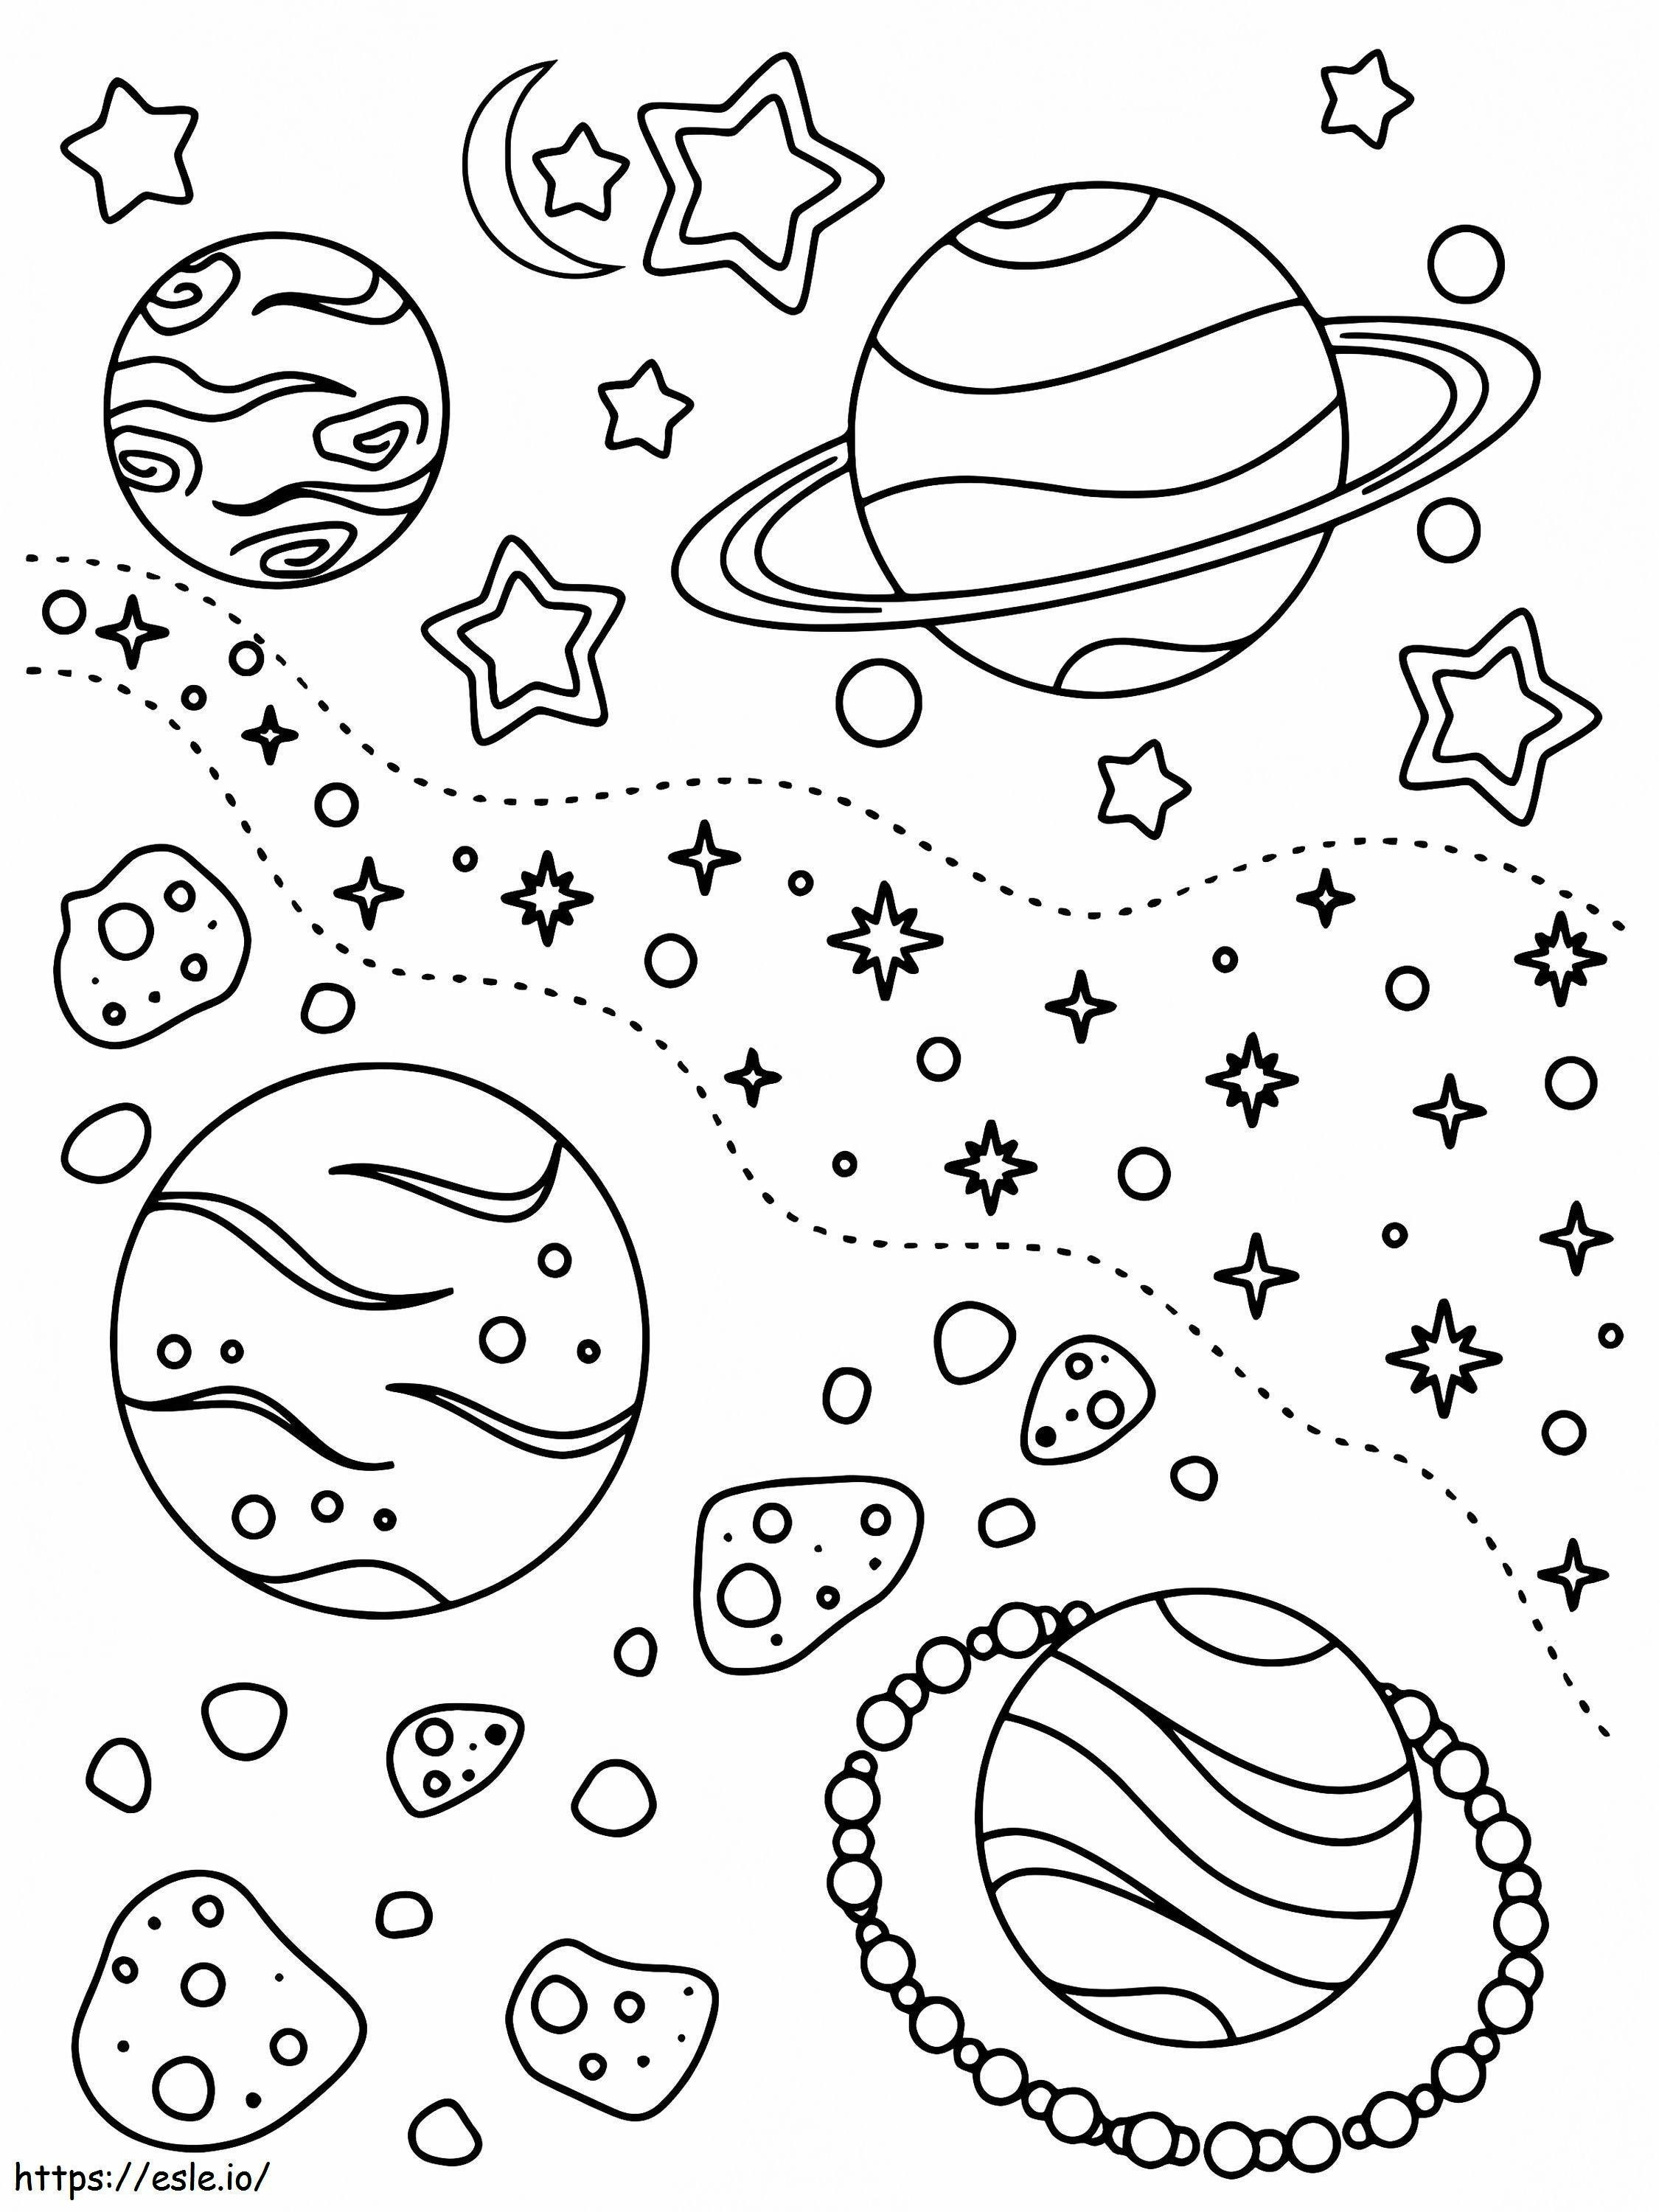 Planetas elegantes no espaço para colorir